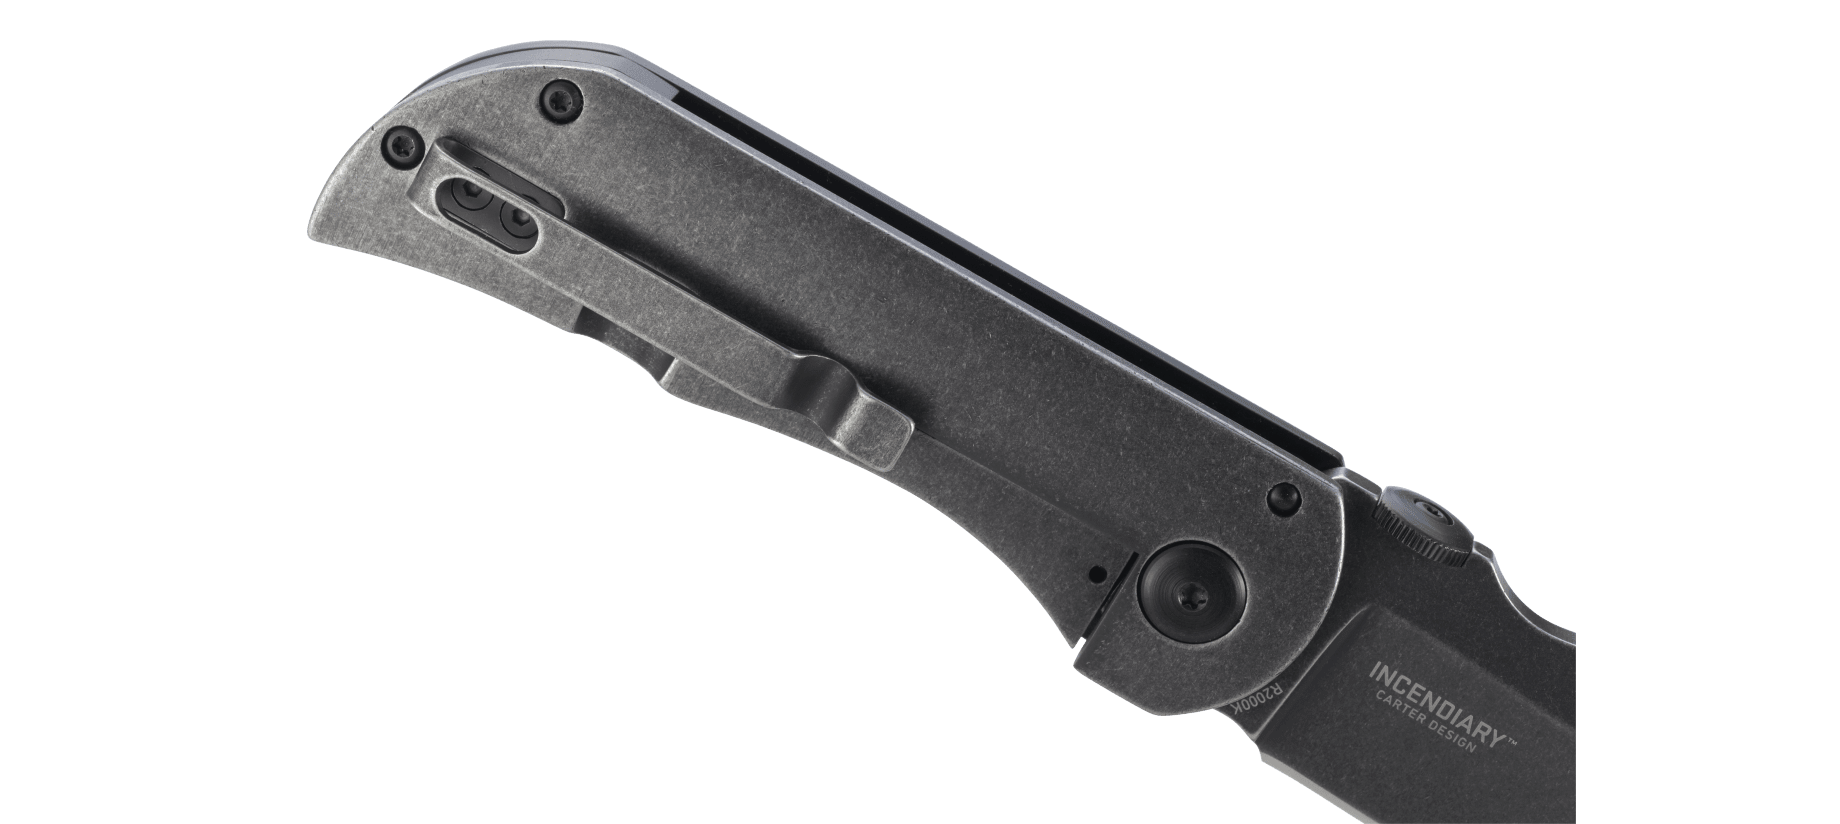 фото Складной нож crkt incendiary™, сталь 8cr13mov, рукоять алюминиевый сплав и нержавеющая сталь